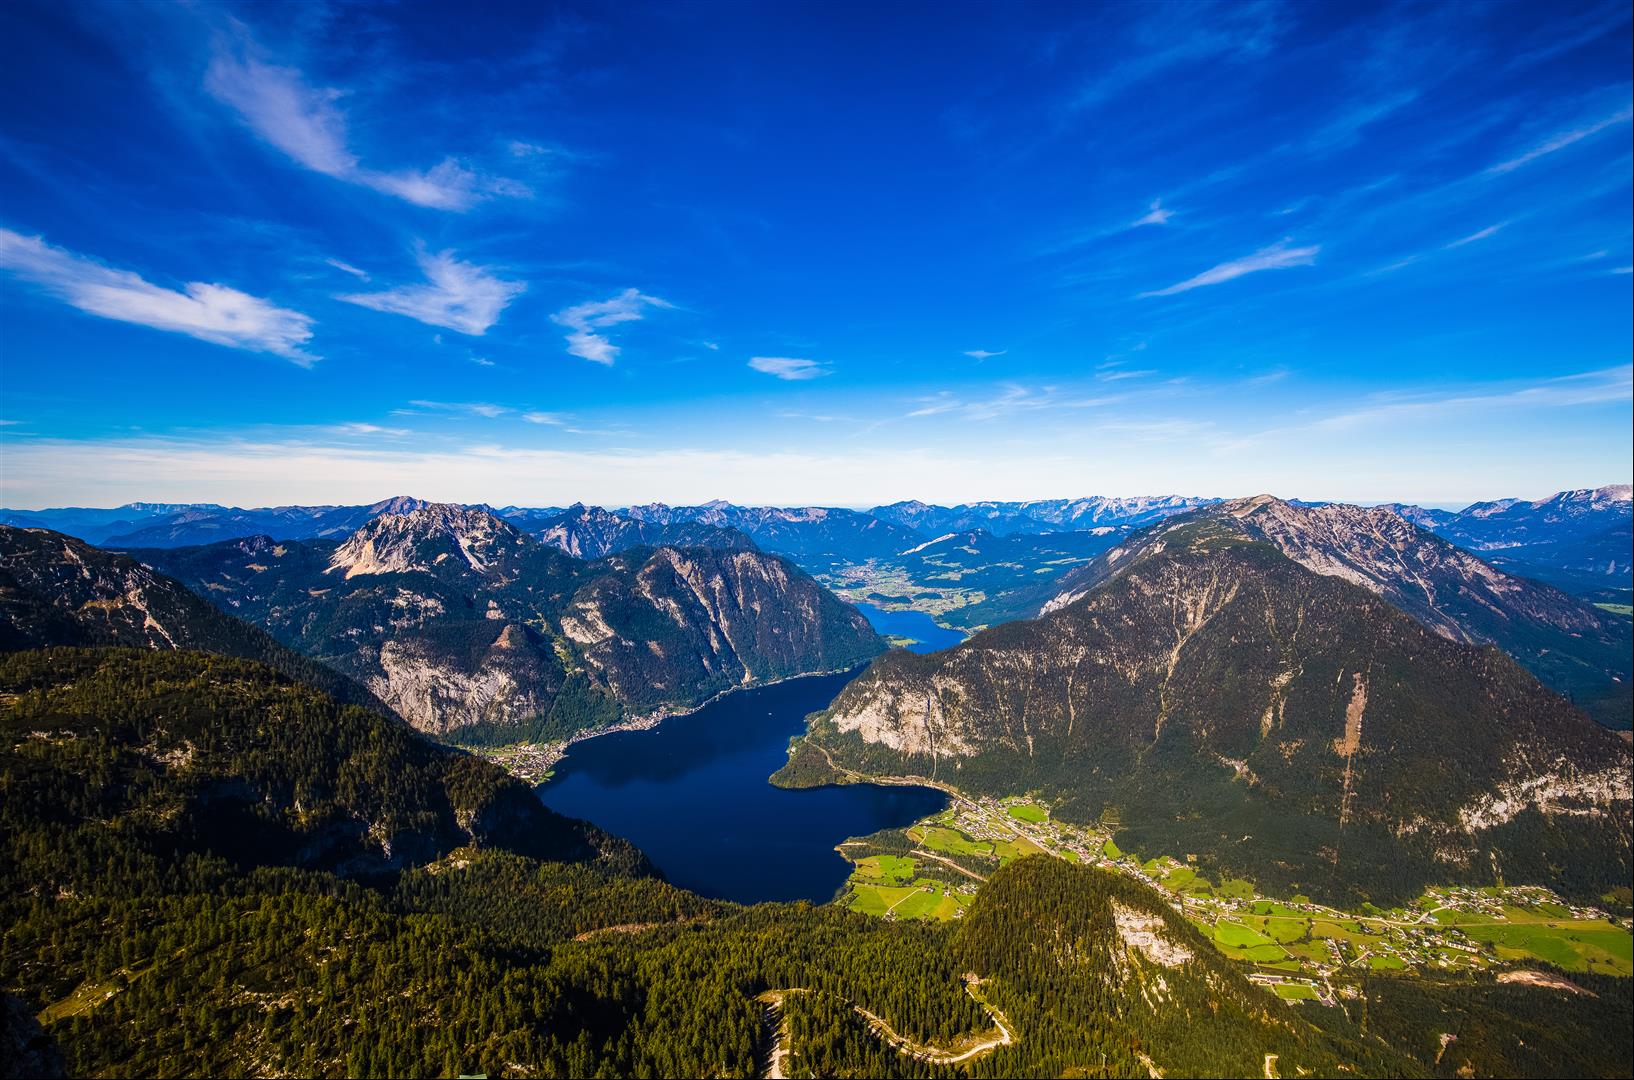 [奧地利/哈斯塔特] 達克斯坦 Dachstein 山，哈斯塔特更值得一來，冰洞、猛瑪洞、五指眺望台